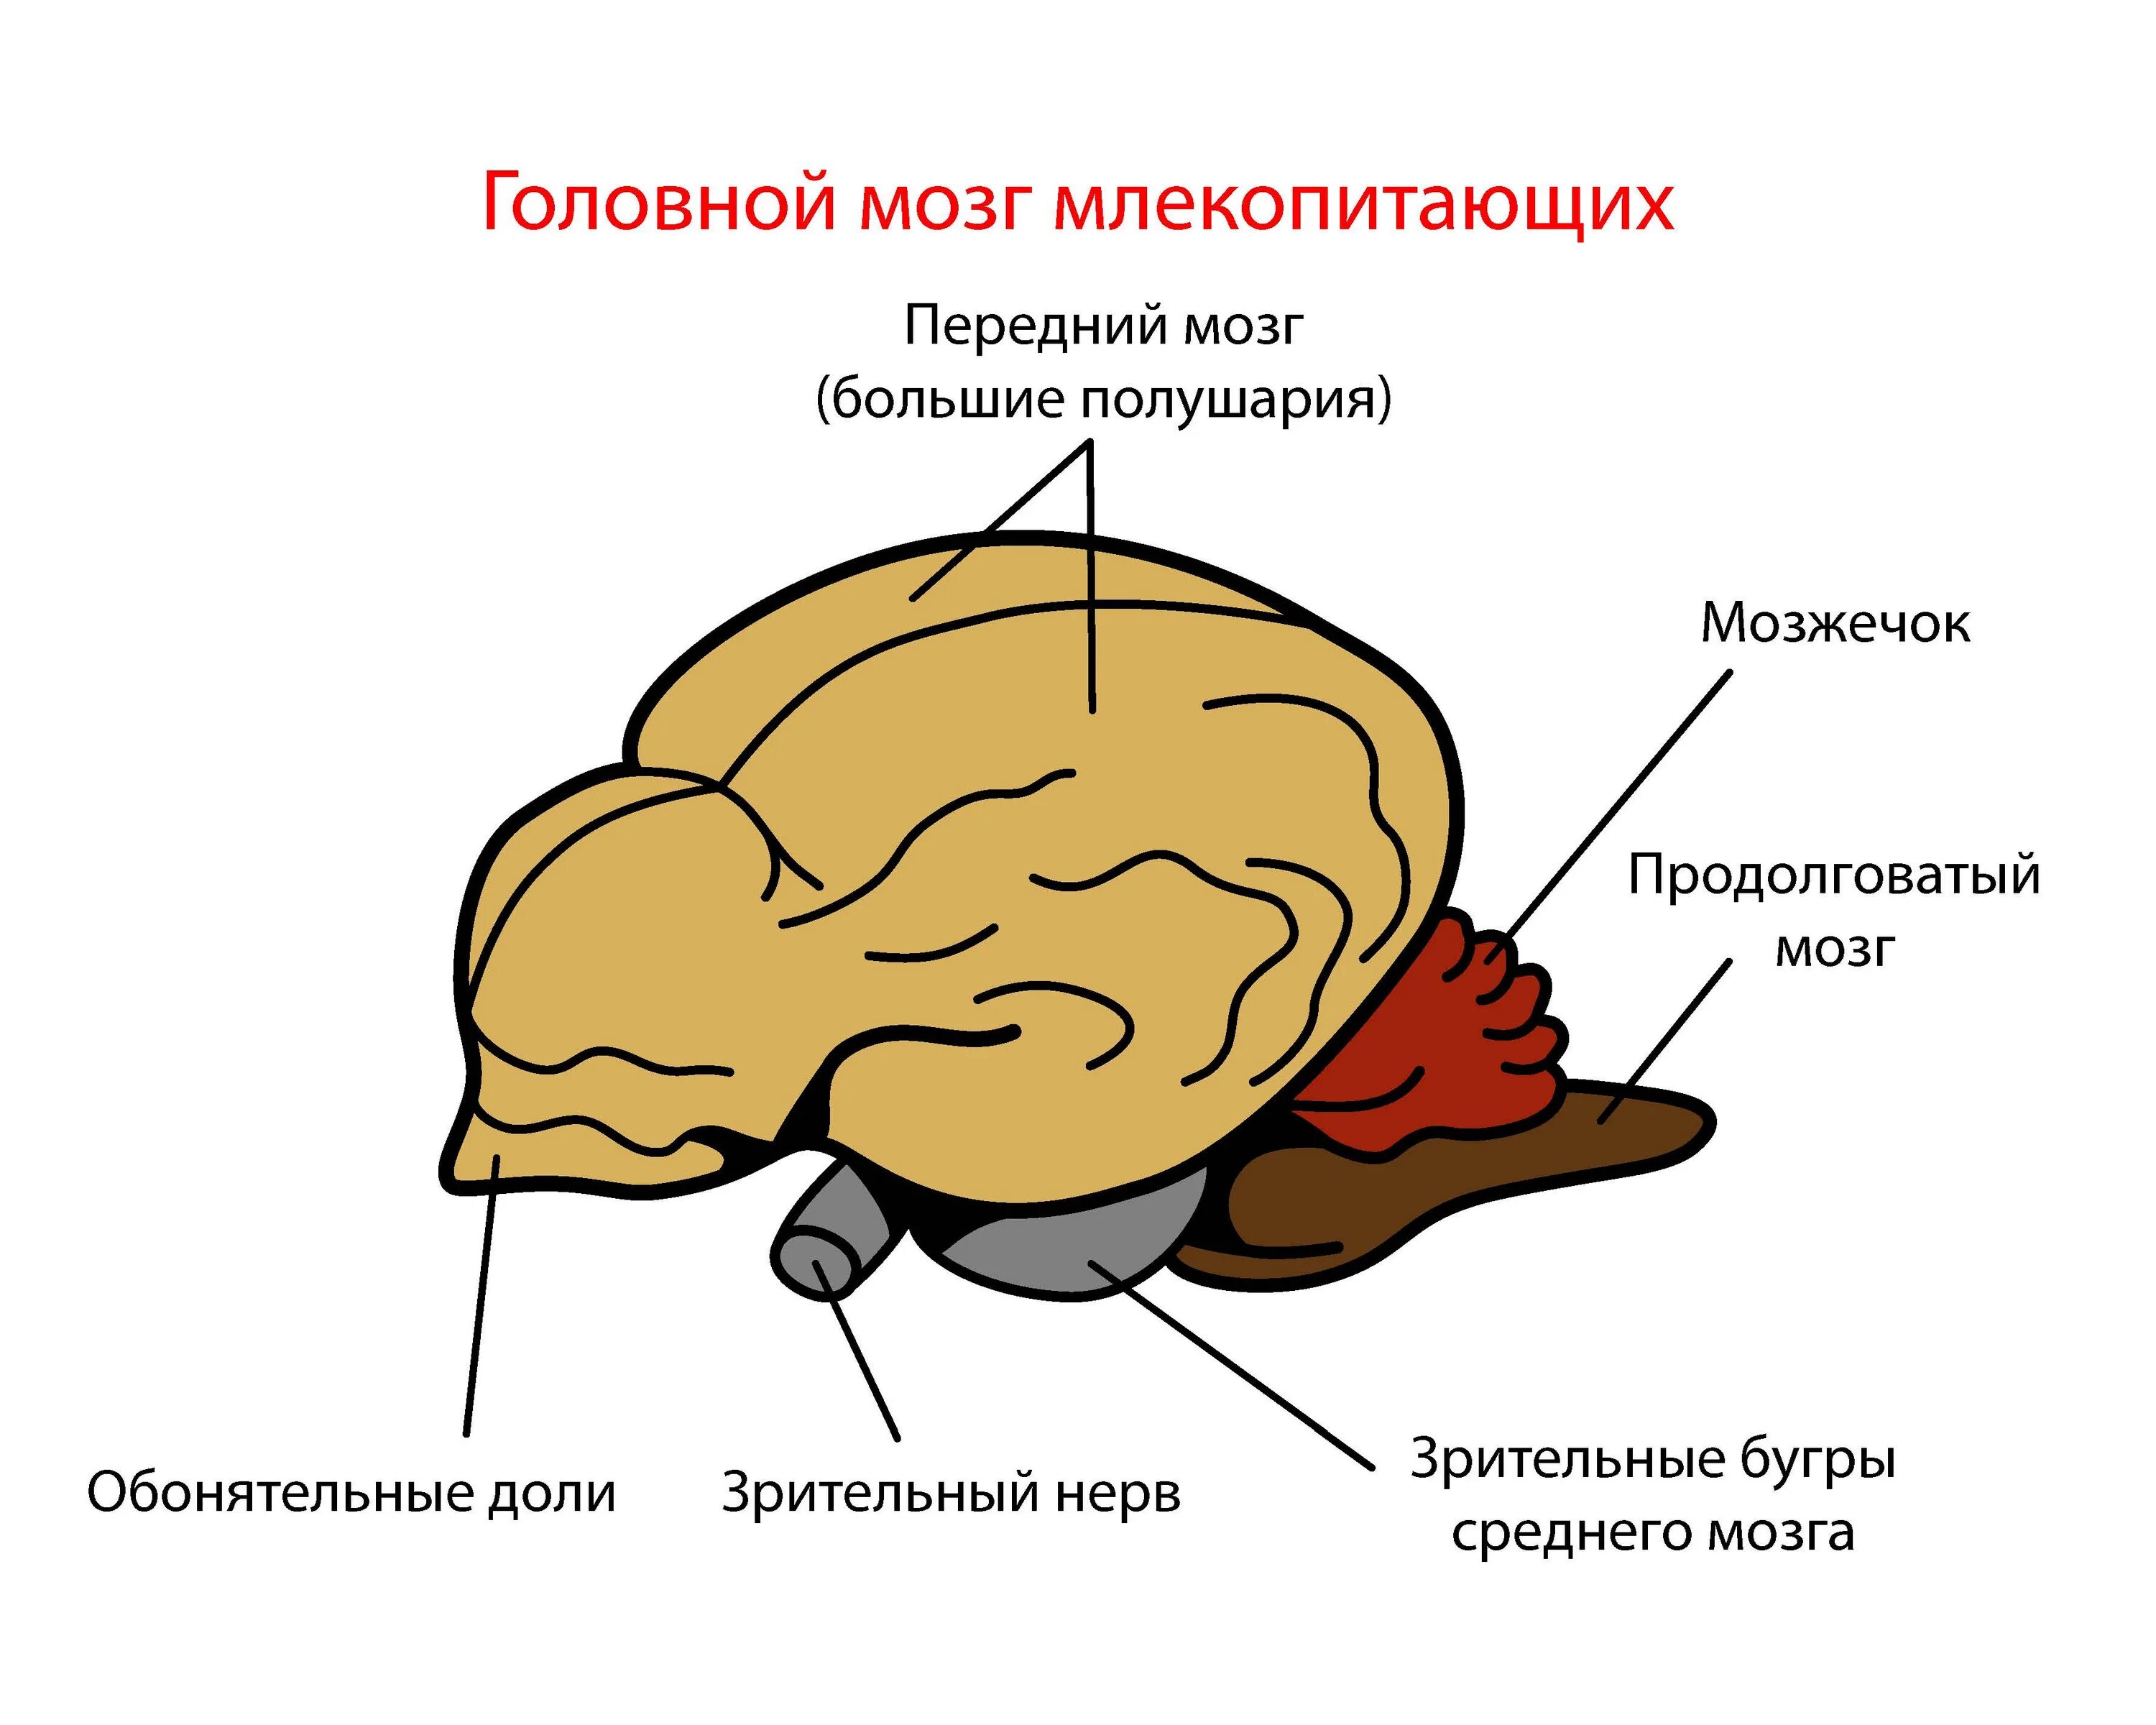 Центры мозга млекопитающих. Головной мозг млекопитающих. Отделы головного мозга млекопитающих. Строение головного мозга млекопитающих. Мозг млекопитающего рисунок.